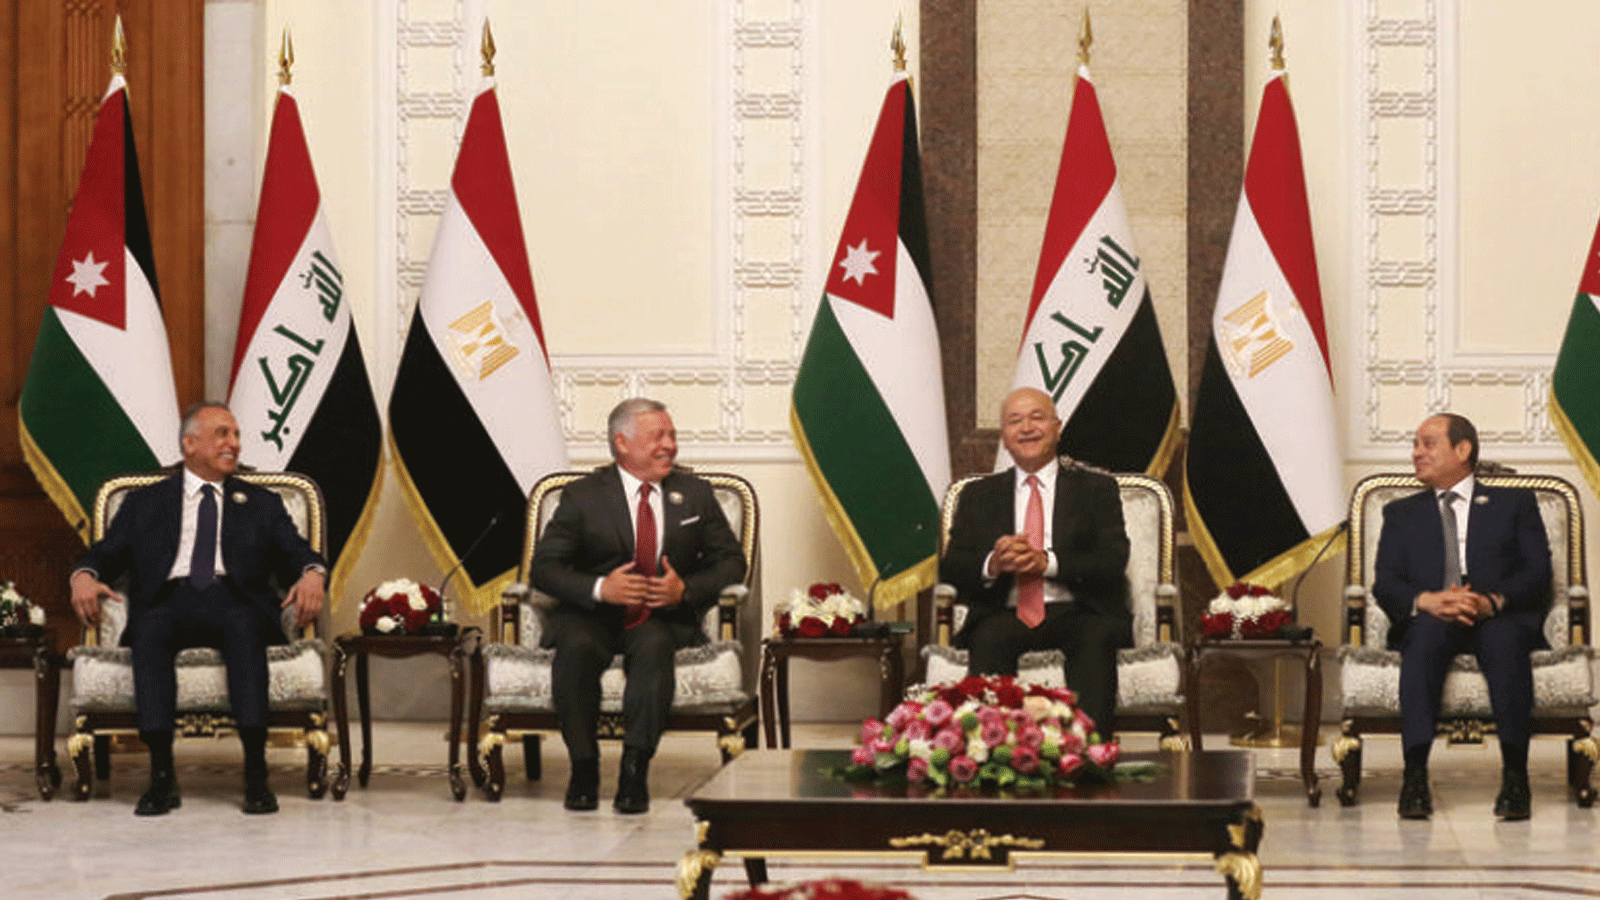 الرئيس العراقي برهم صالح يتوسط رئيس الوزراء مصطفى الكاظمي (يسار) الرئيس المصري عبد الفتاح السيسي (يمين) والعاهل الأردني الملك عبد الله الثاني (الثاني من اليسار) في 27 حزيران/ يونيو 2021